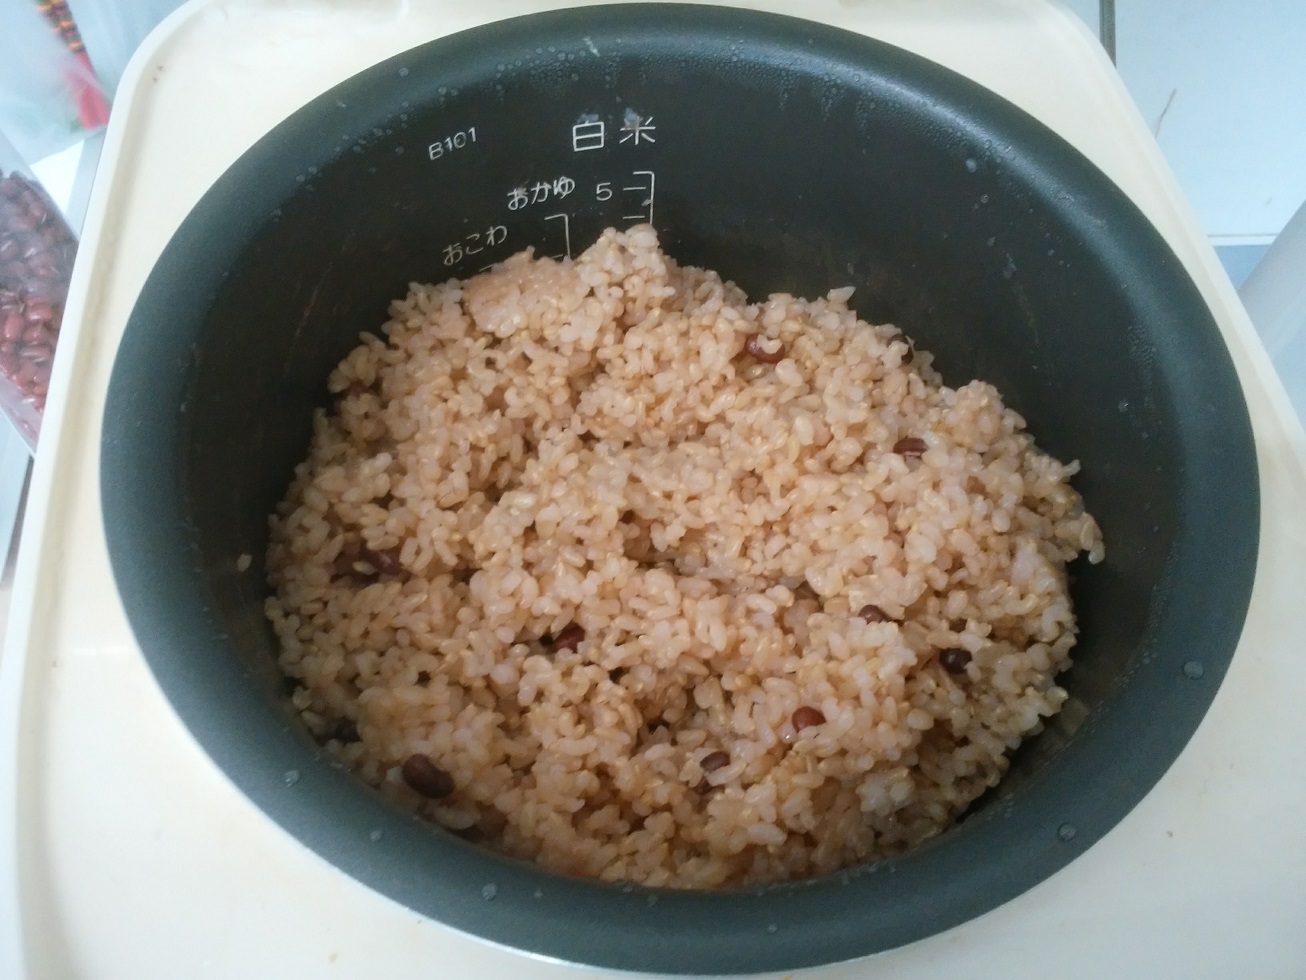 多目的機能支払講習会に参加しました。発酵玄米はとってもおいしいです。